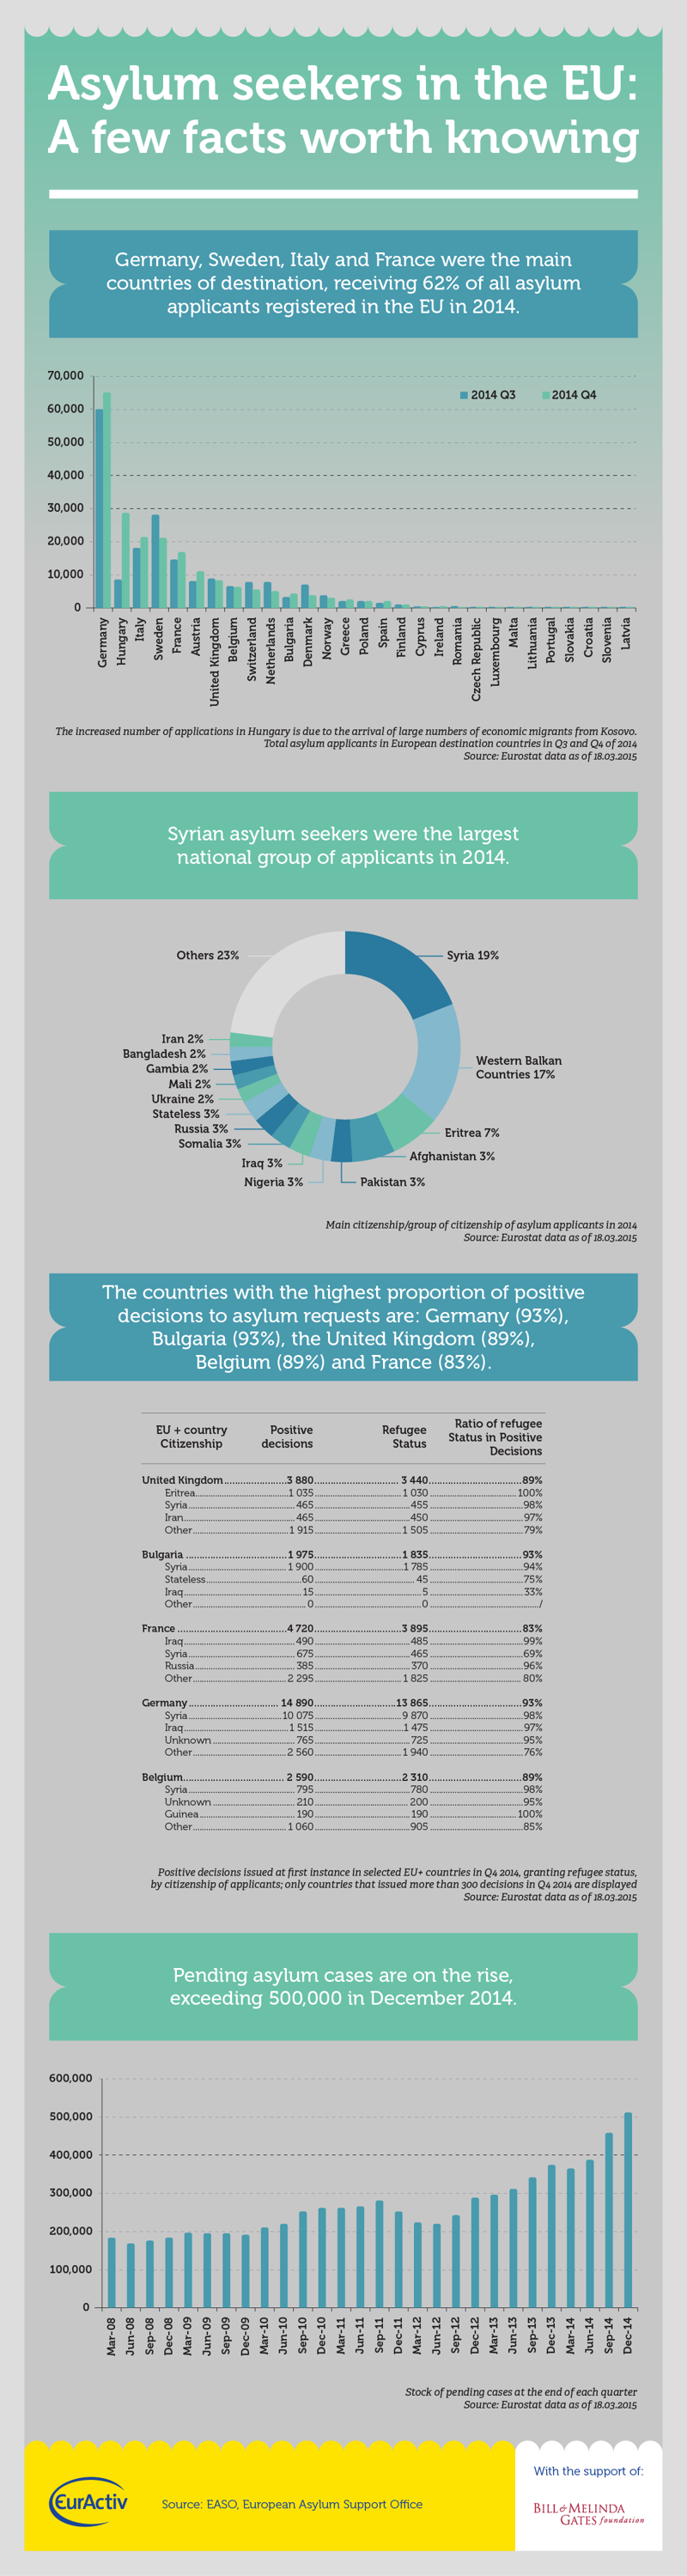 richiedenti asilo infografica